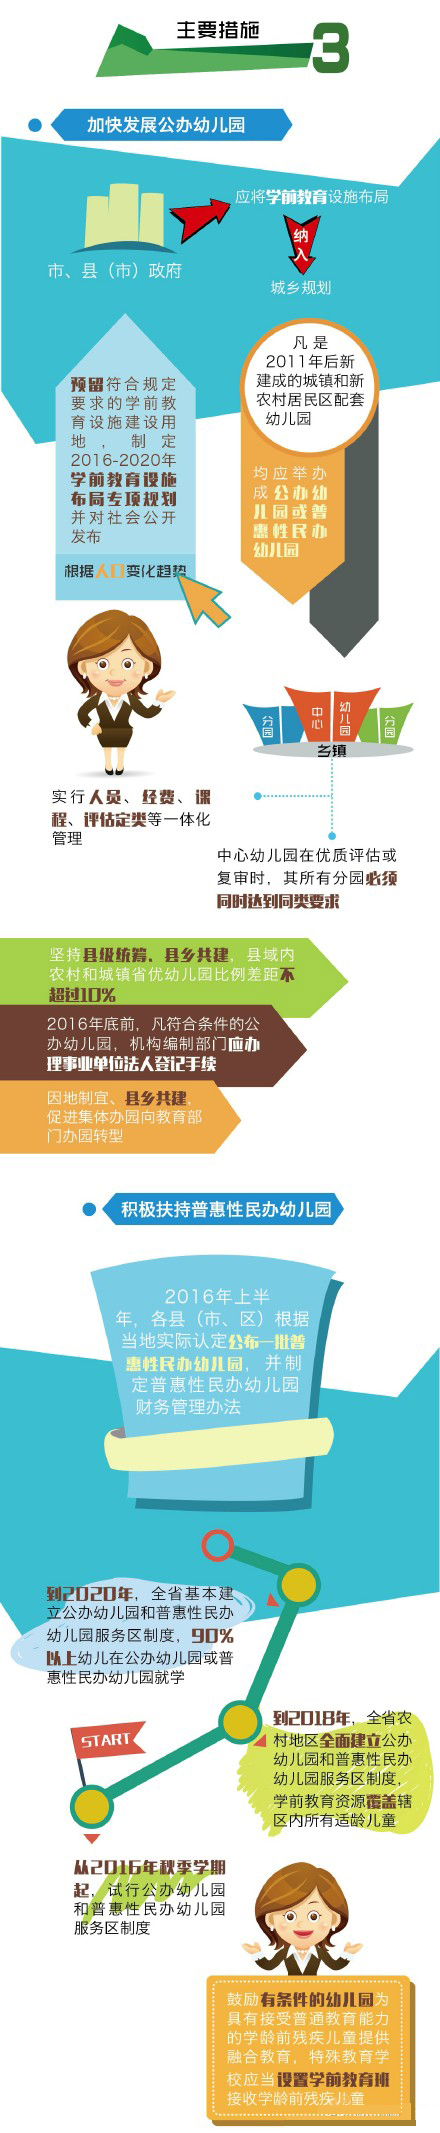 江苏发布第二期学前教育五年行动计划